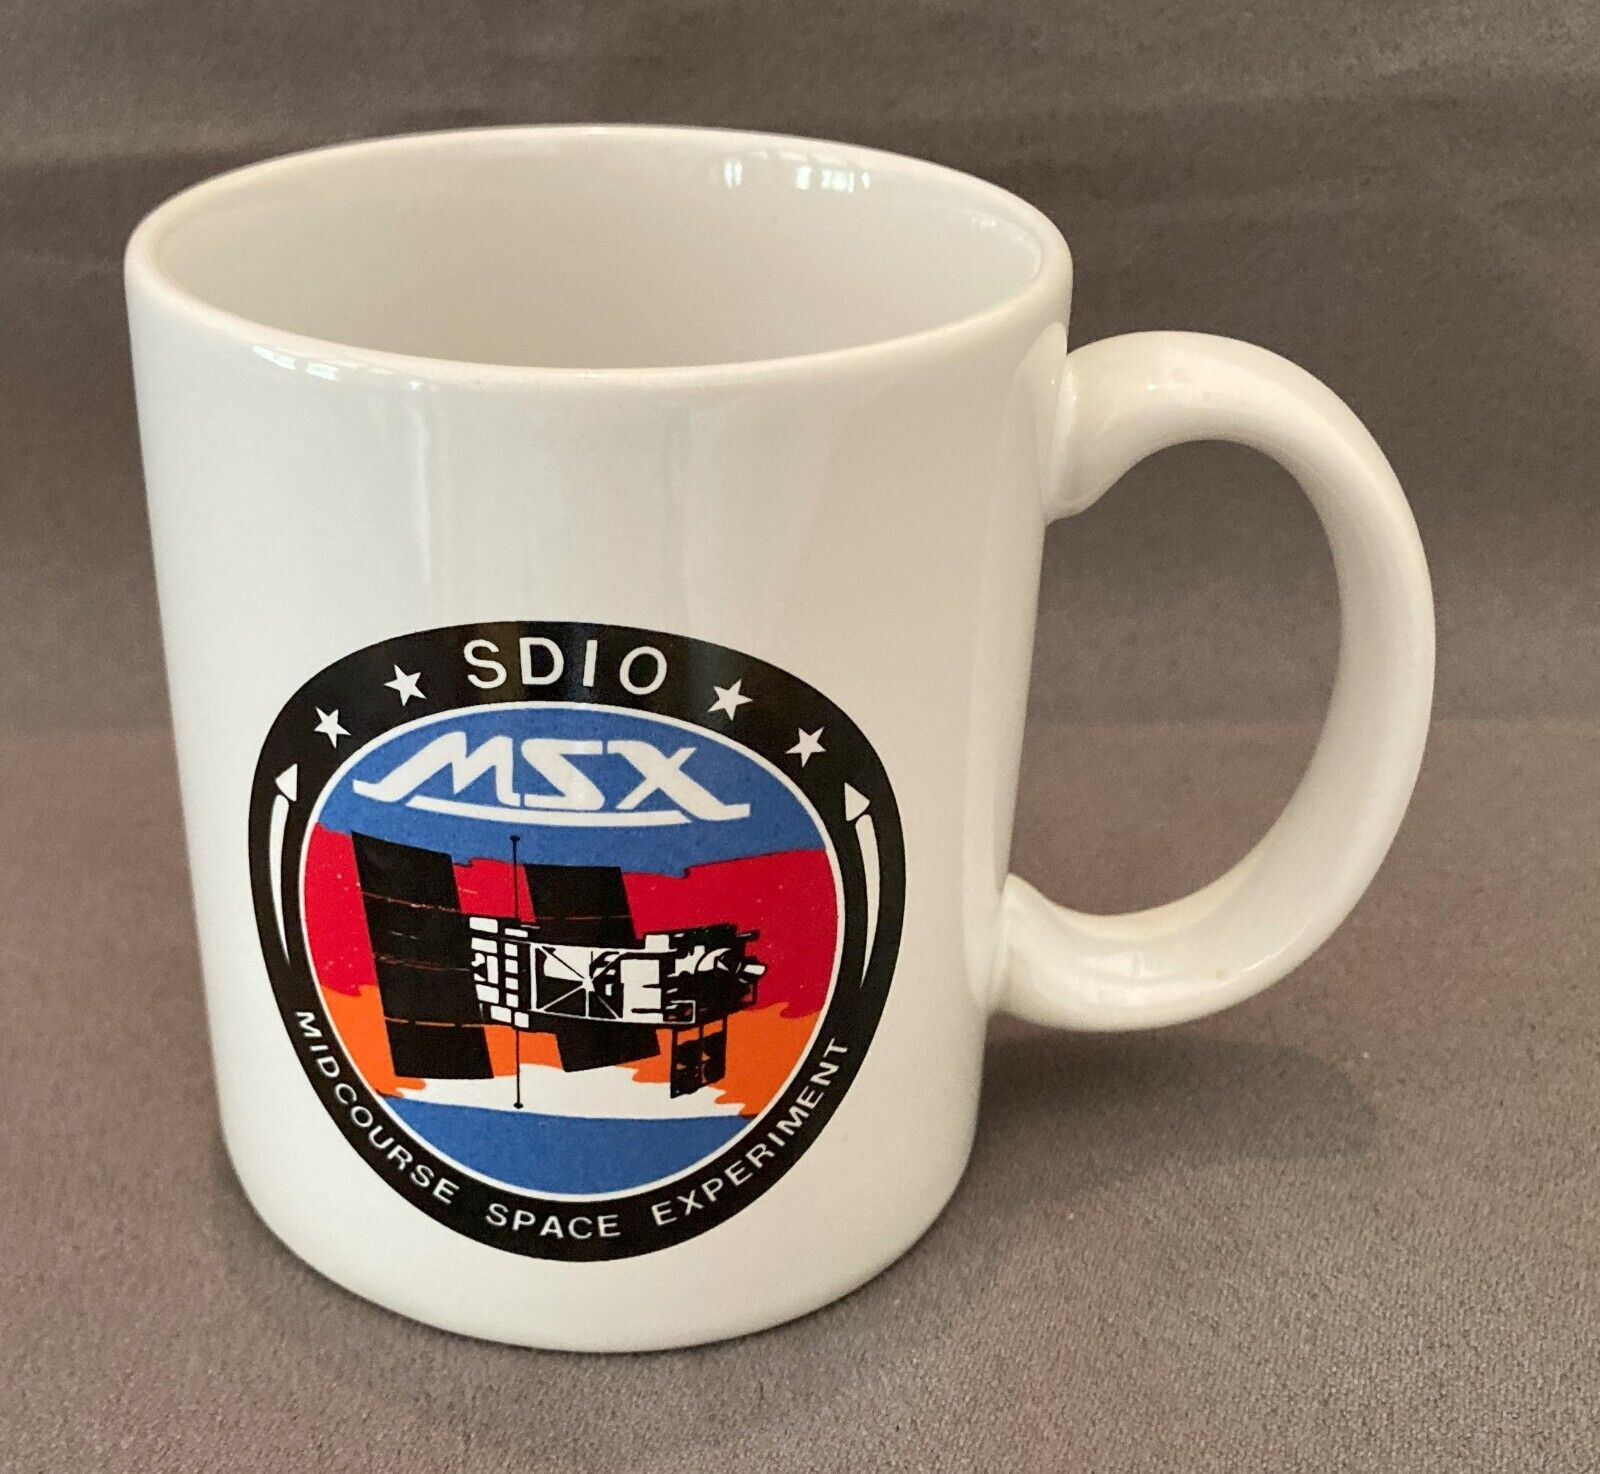 Midcourse Space Experiment MSX SDIO BMDO DoD Ceramic Mug - Unused